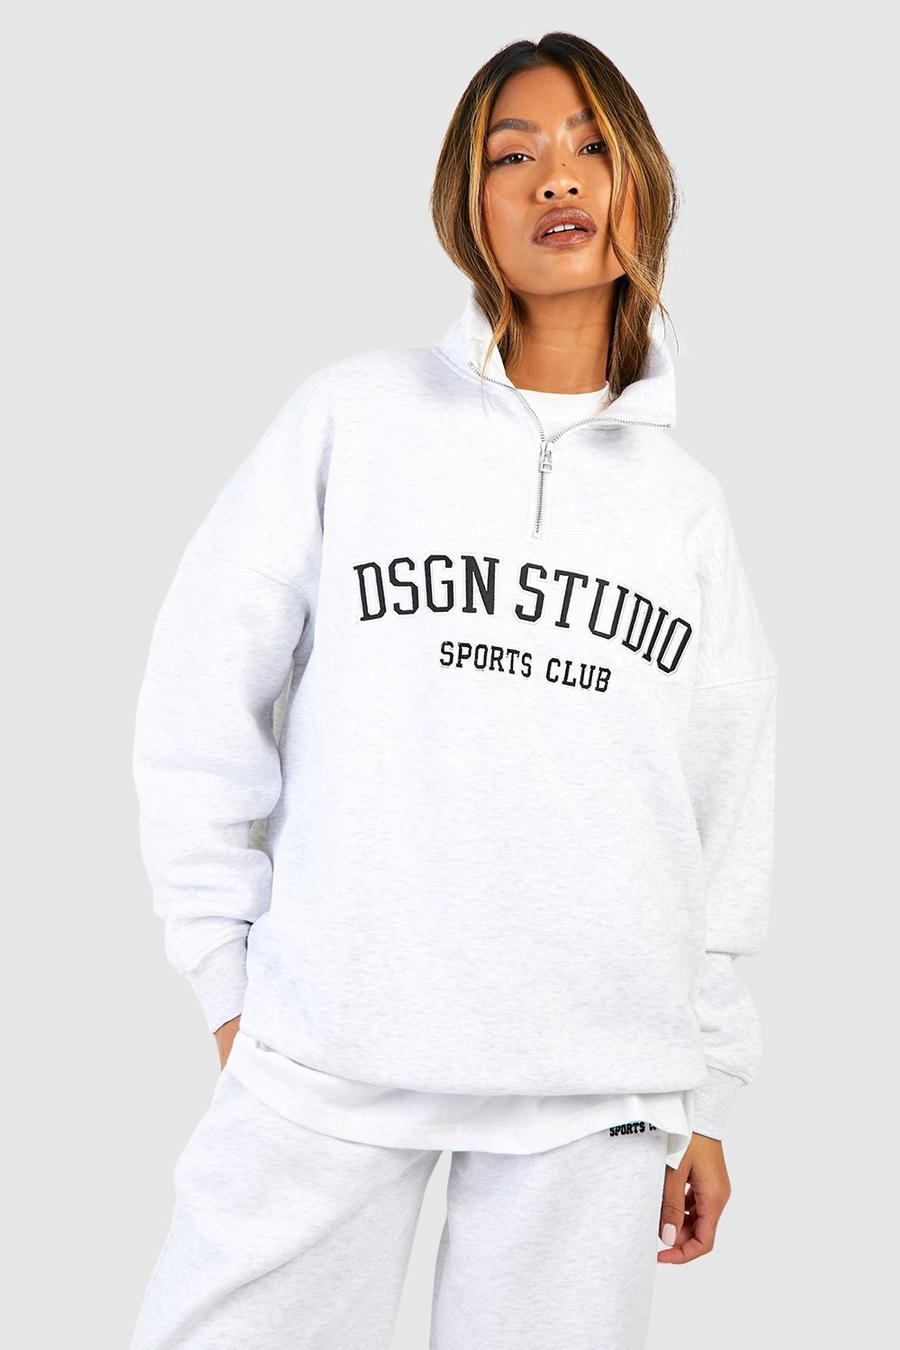 Oversize Sweatshirt mit Dsgn Studio Applikation und halbem Reißverschluss, Ash grey